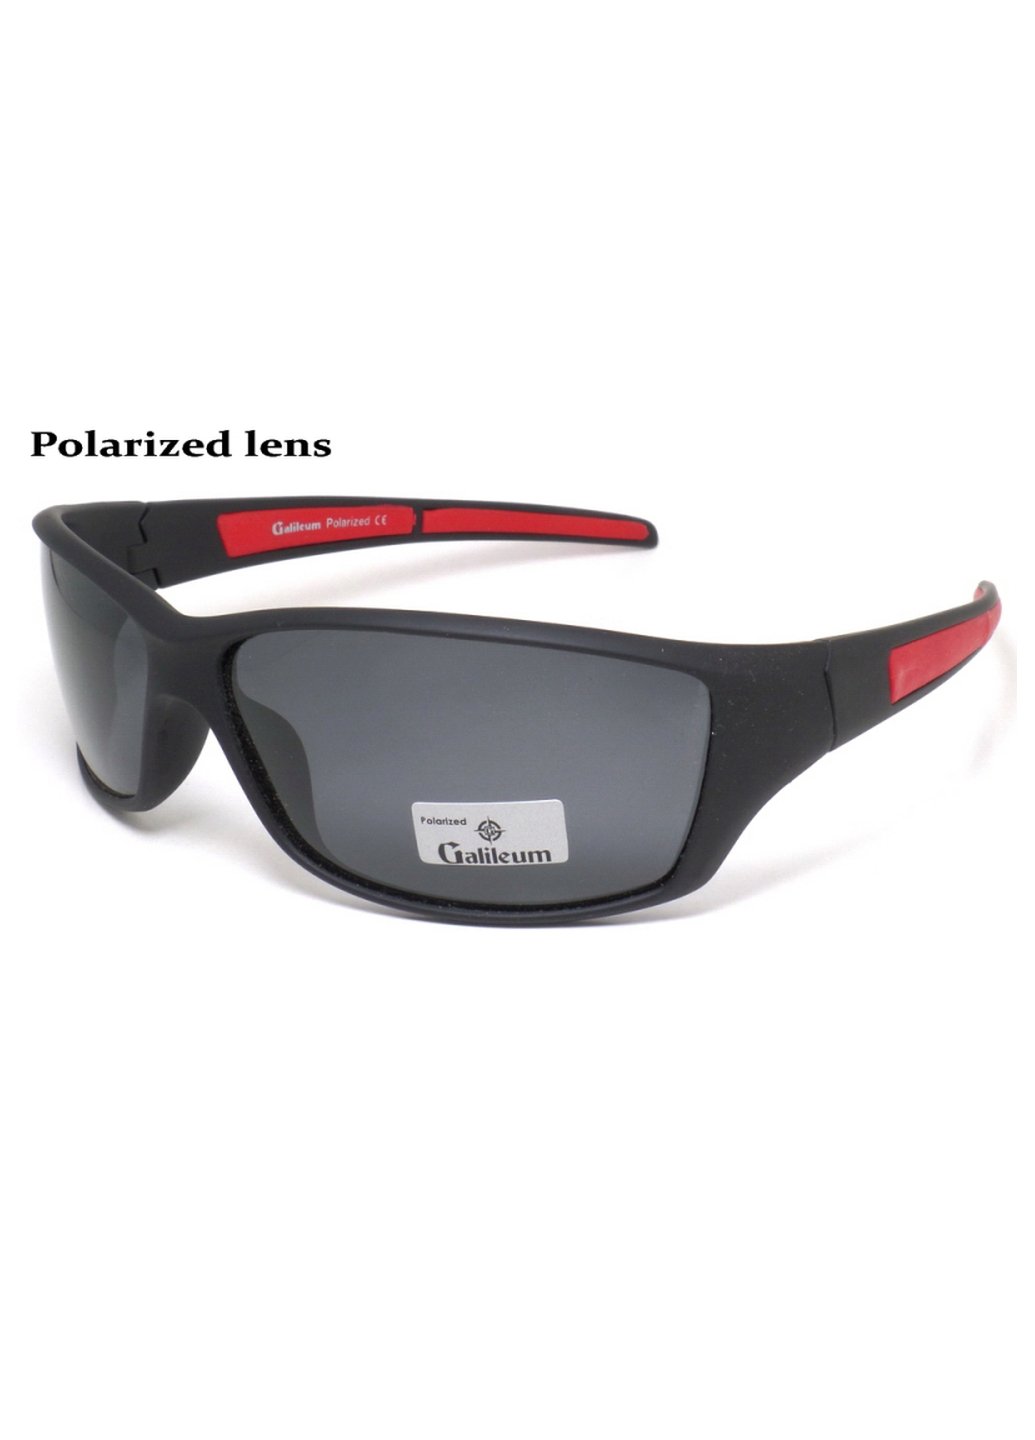 Купить Спортивные очки с поляризацией Galileum 125015 в интернет-магазине